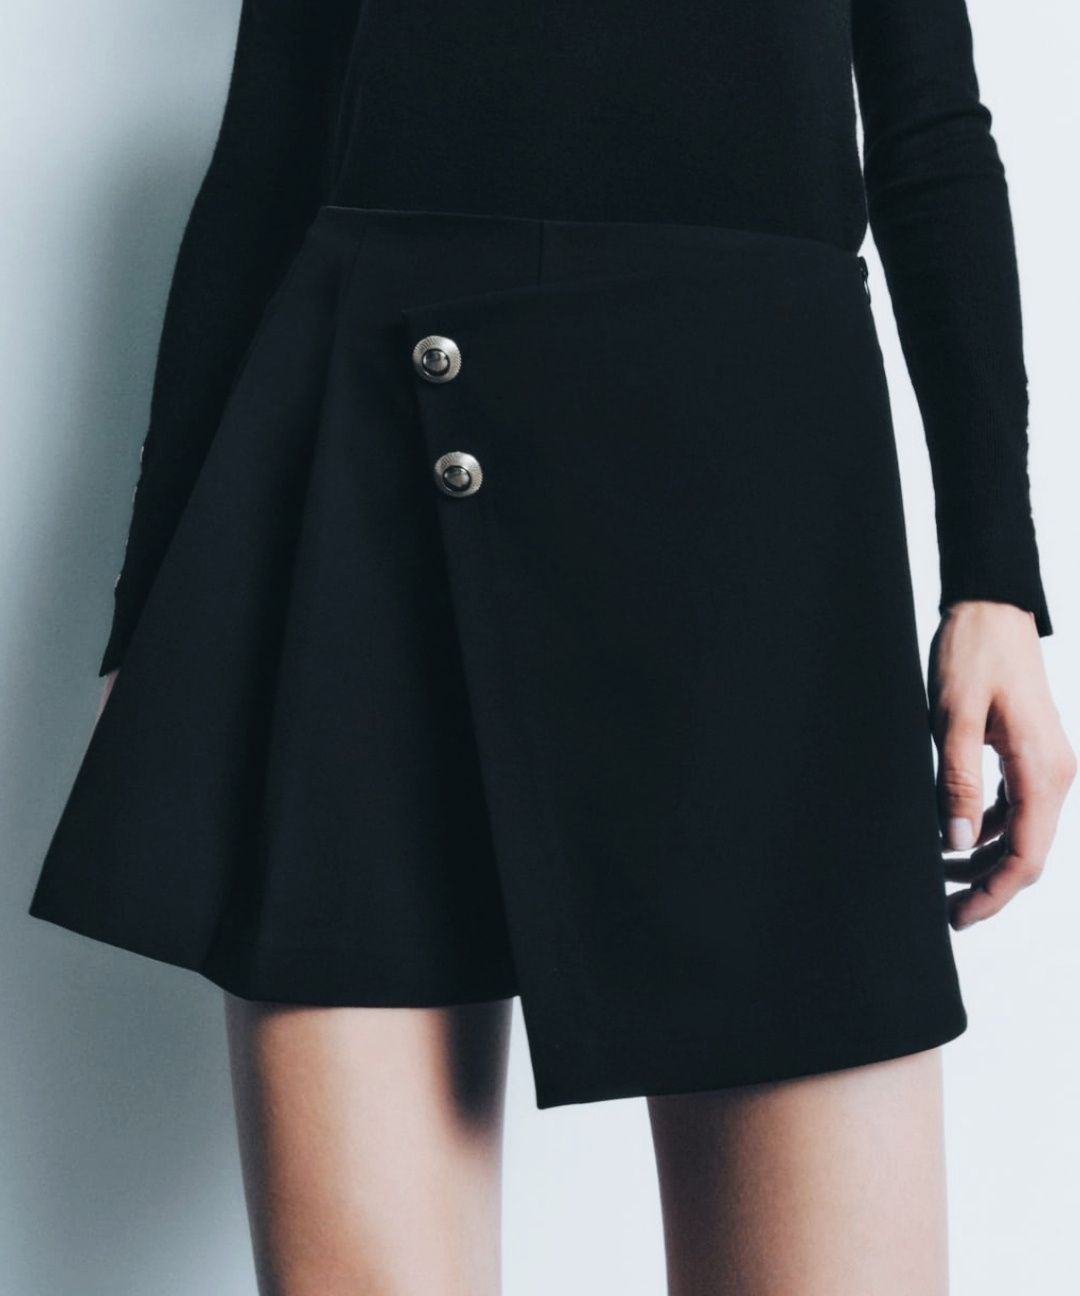 Nowe, czarne spódnicospodnie Zara S